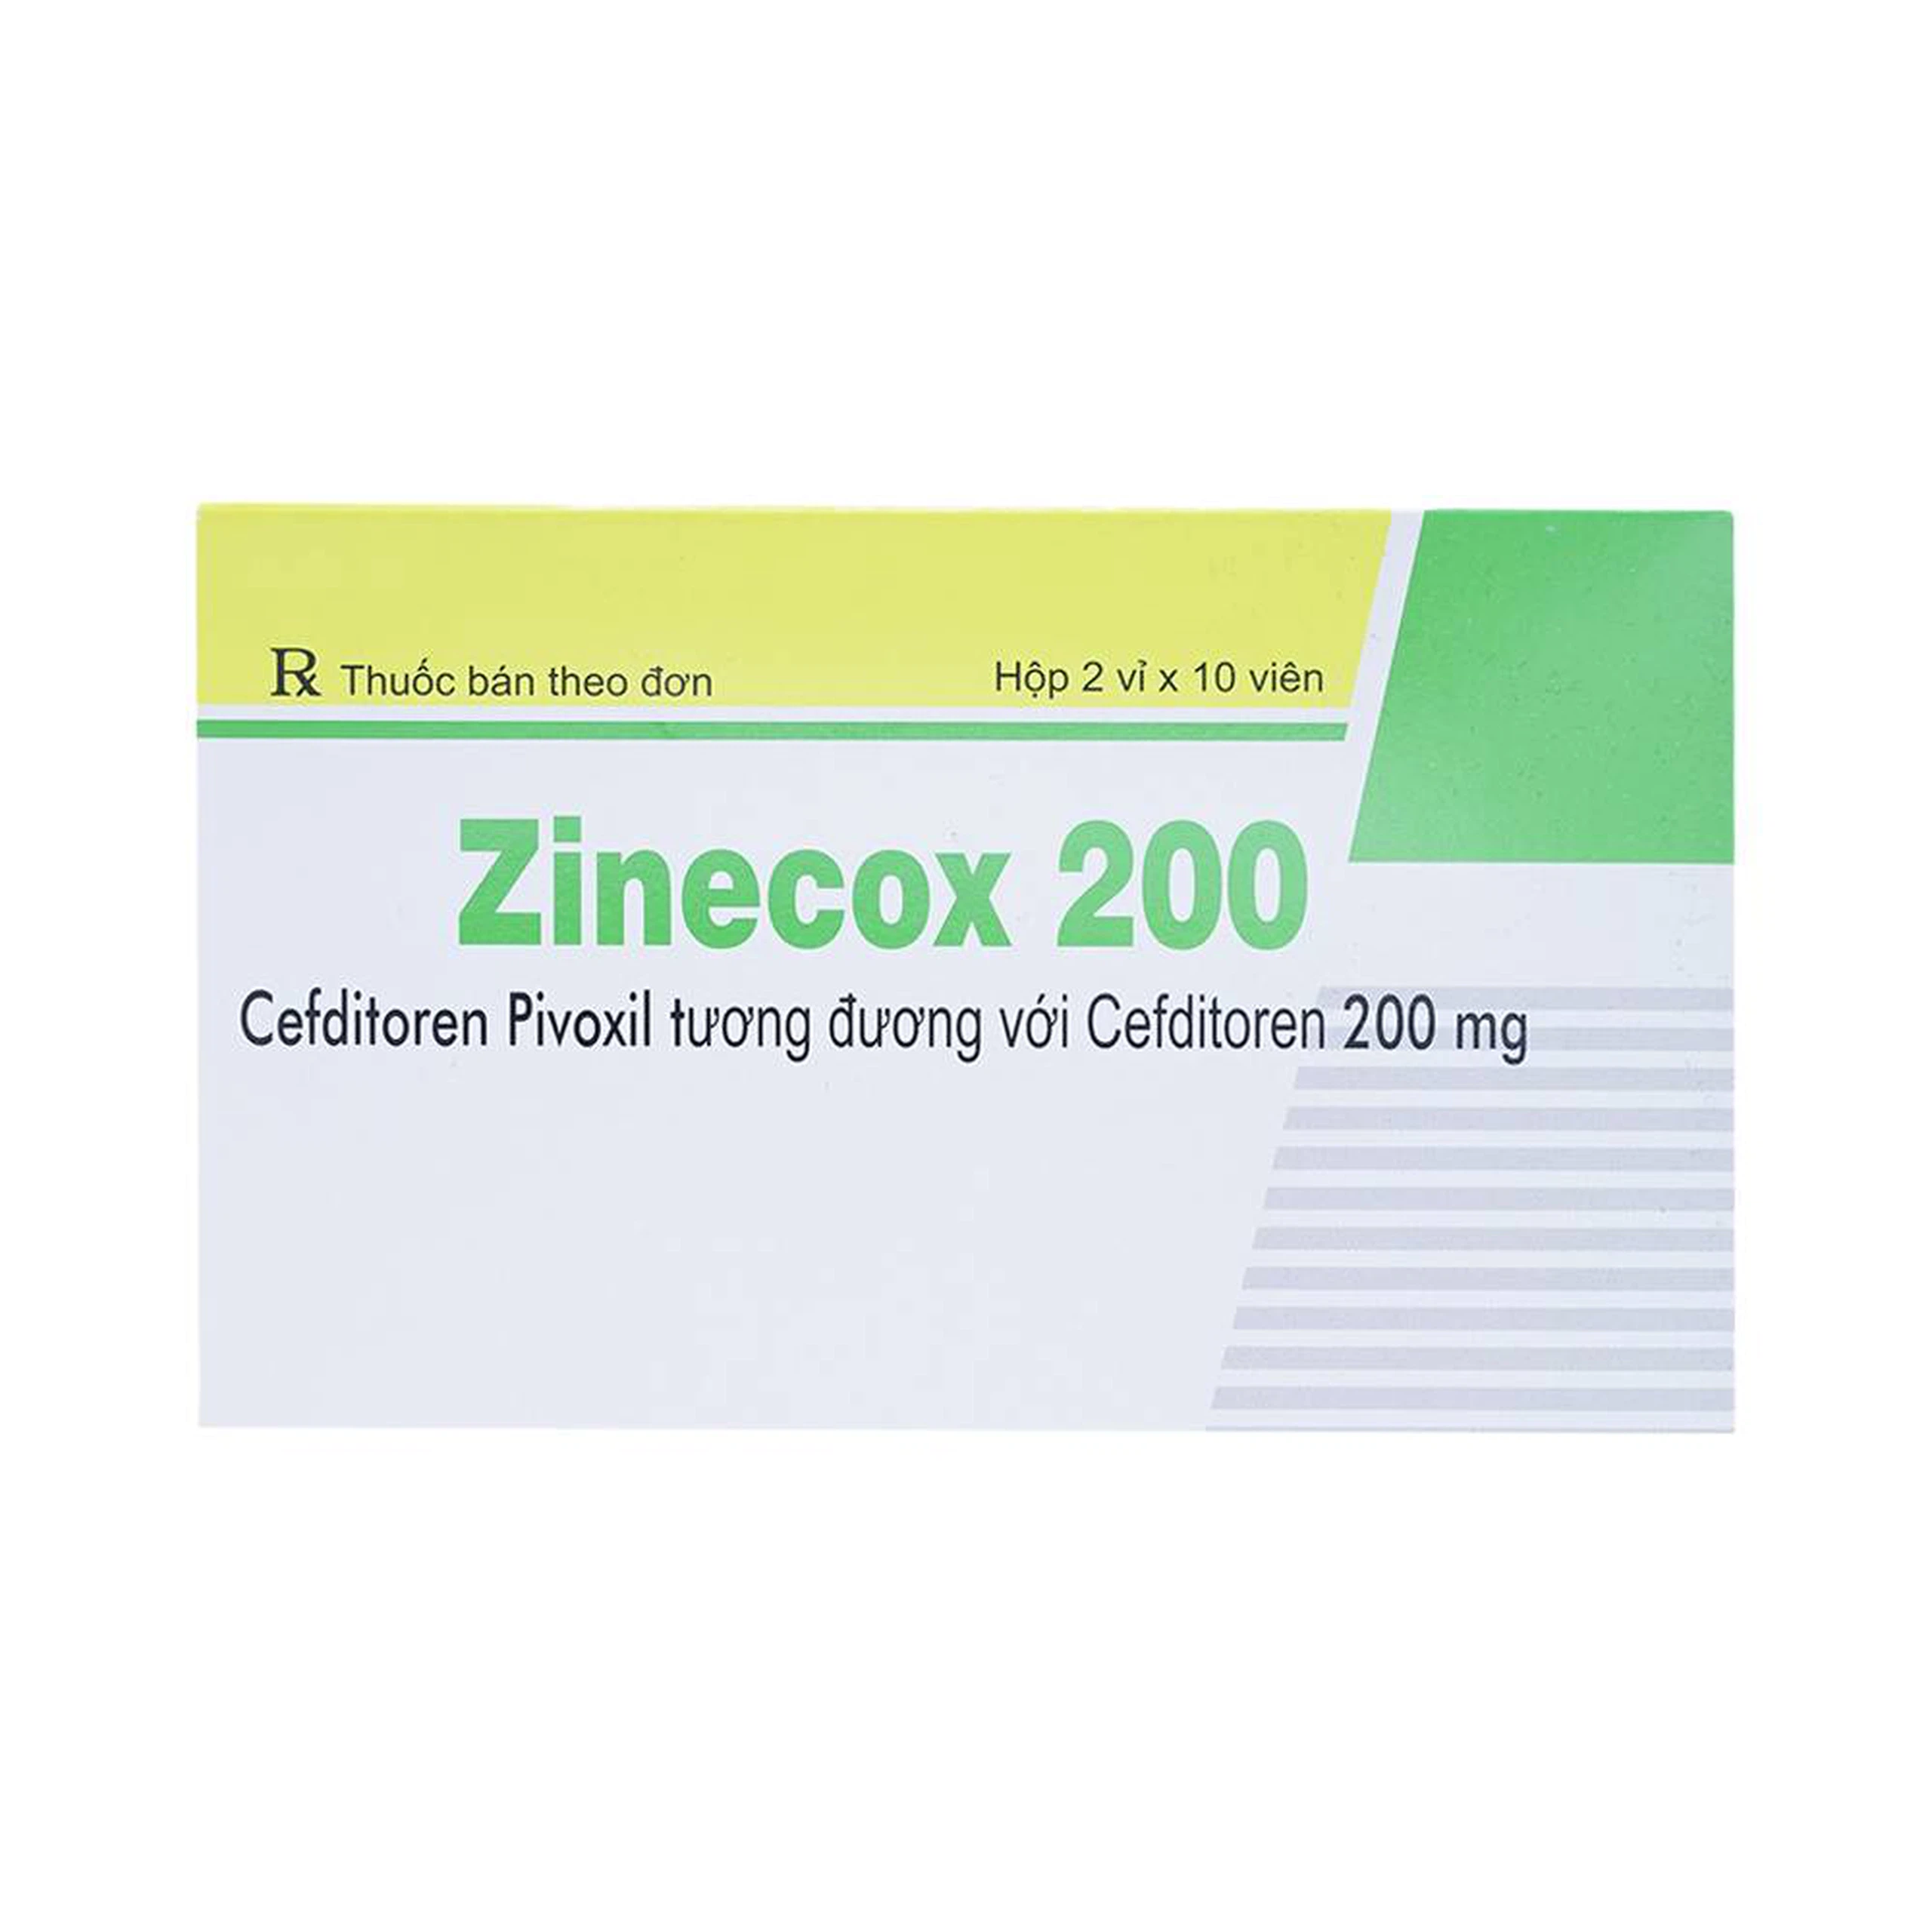 Thuốc Zinecox 200 Maxim điều trị viêm amidan, viêm họng cấp (2 vỉ x 10 viên)